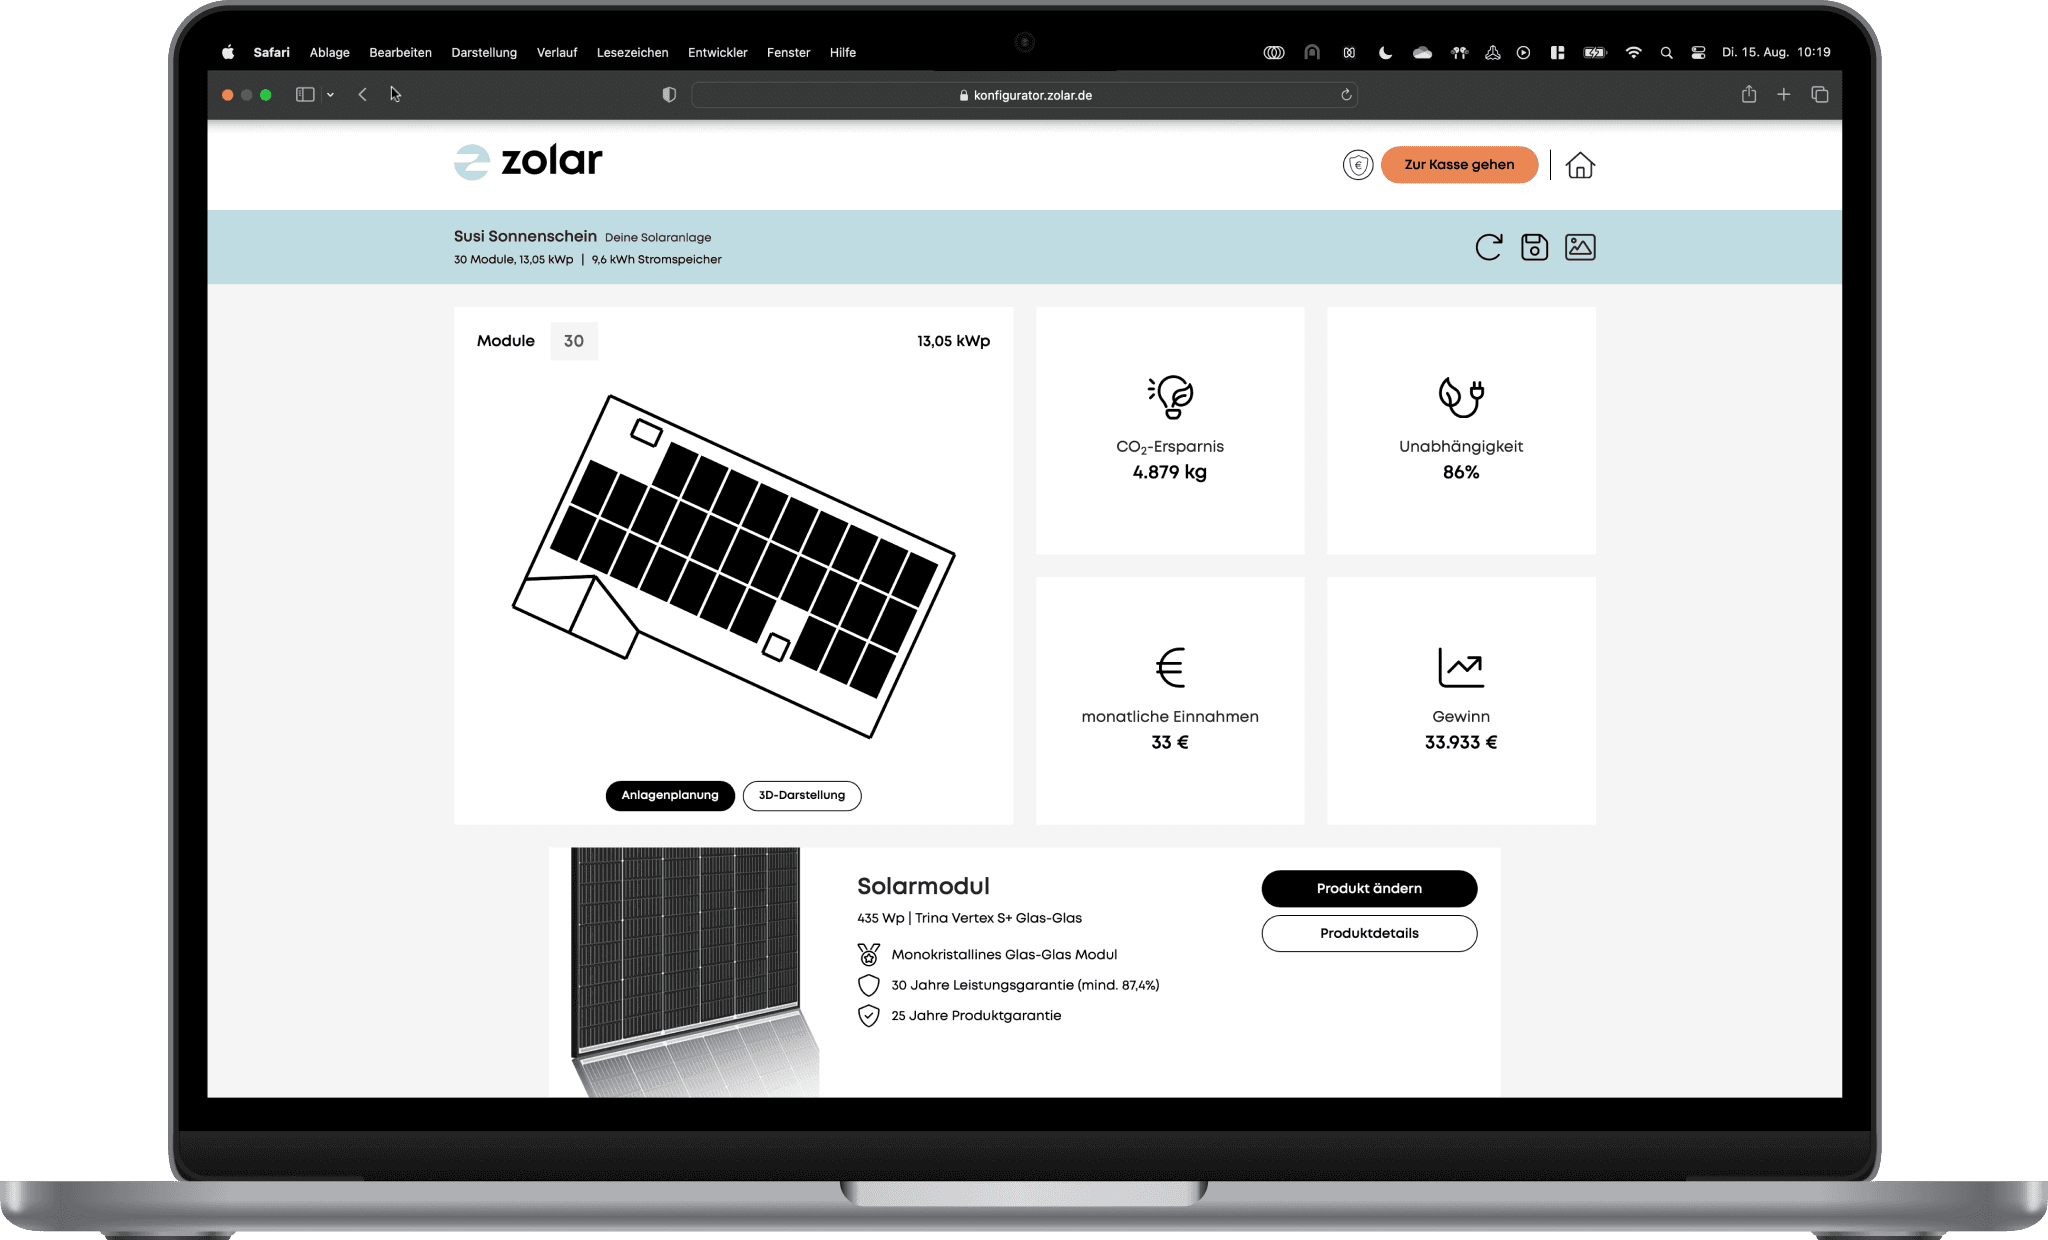 Screenshot aus dem zolar Online Konfigurator zeigt CO²-Ersparnis, Unabhängigkeit, monatliche Einnahmen und Gewinn einer PV-Anlage von zolar